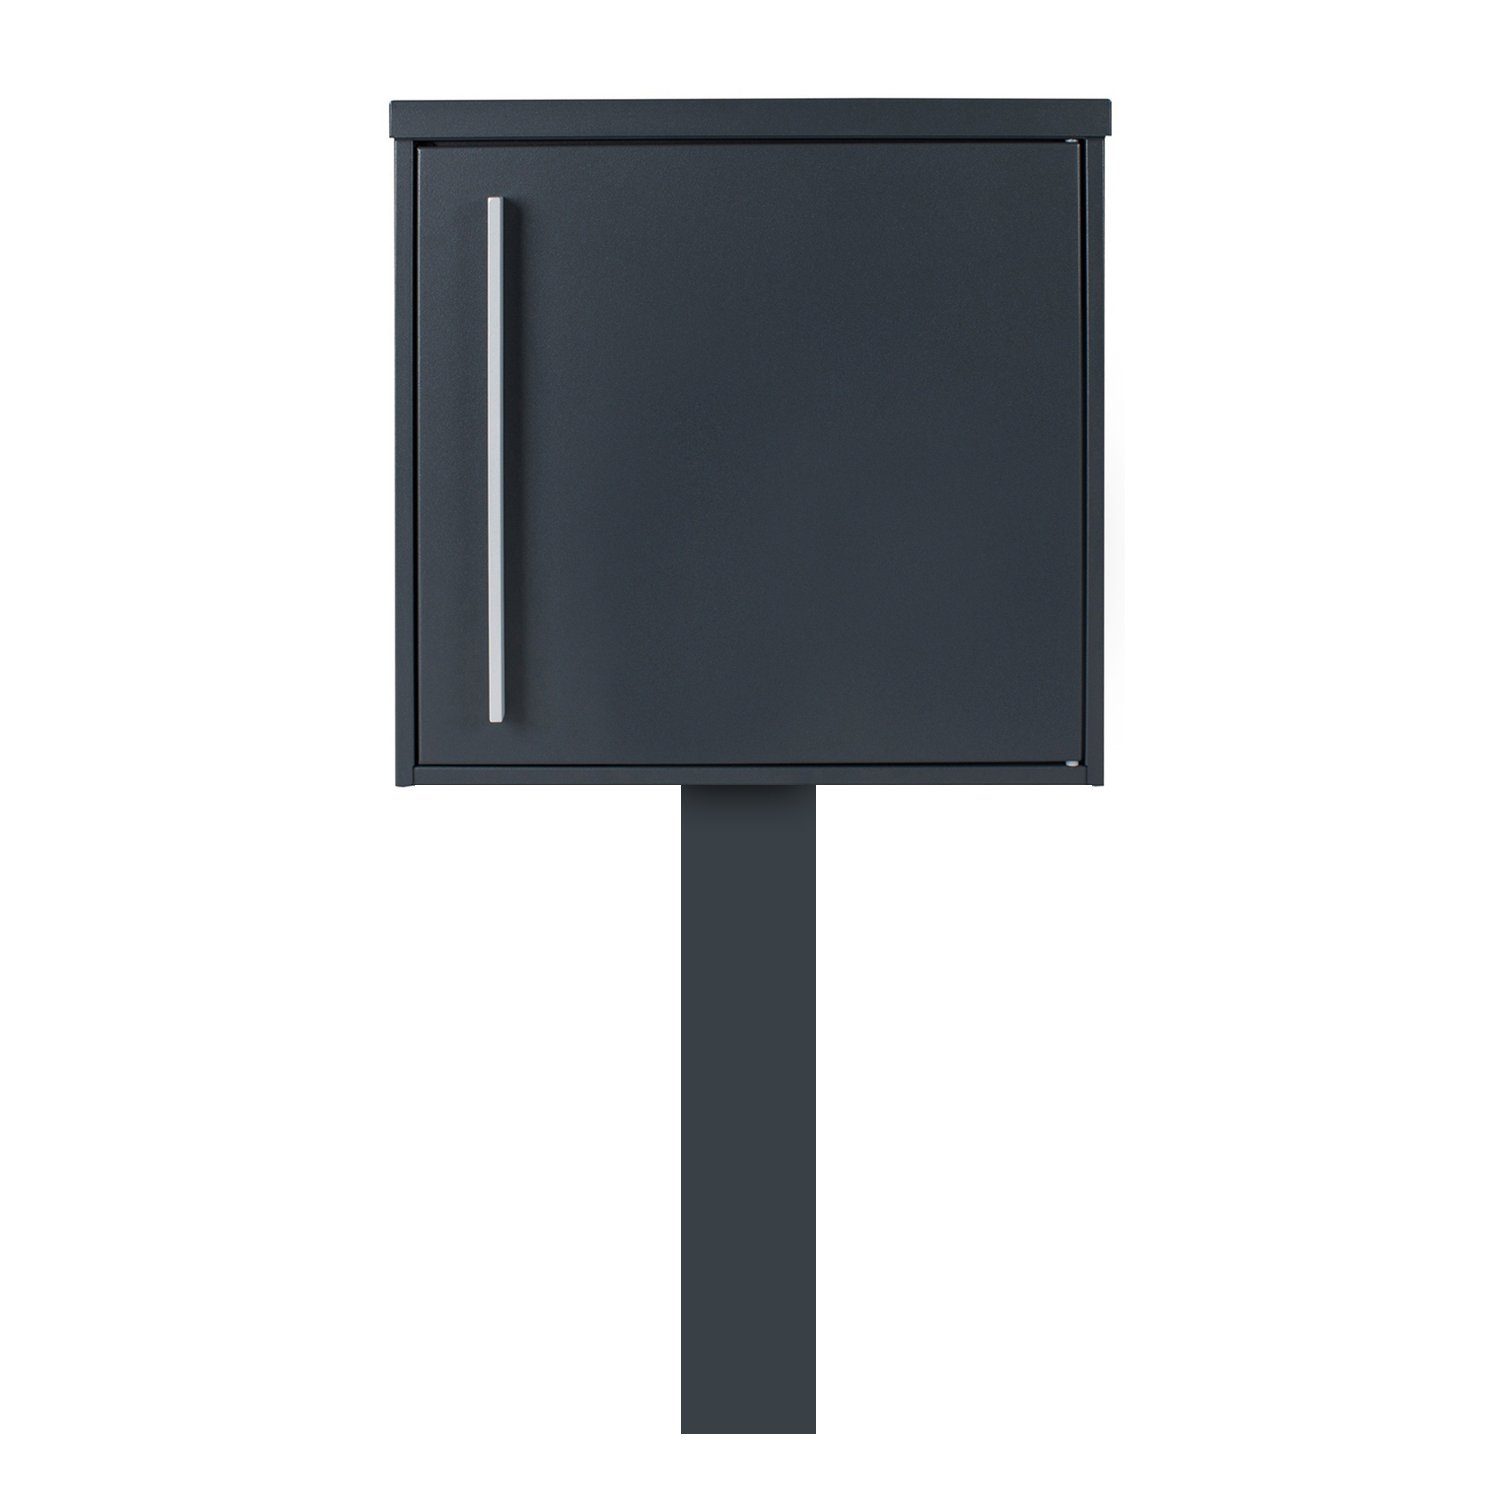 MOCAVI Briefkasten »MOCAVI Sbox 101r b Standbriefkasten anthrazit-grau (RAL  7016) Design-Postkasten freistehend mit Pfosten (betonieren), Türanschlag  rechts« online kaufen | OTTO